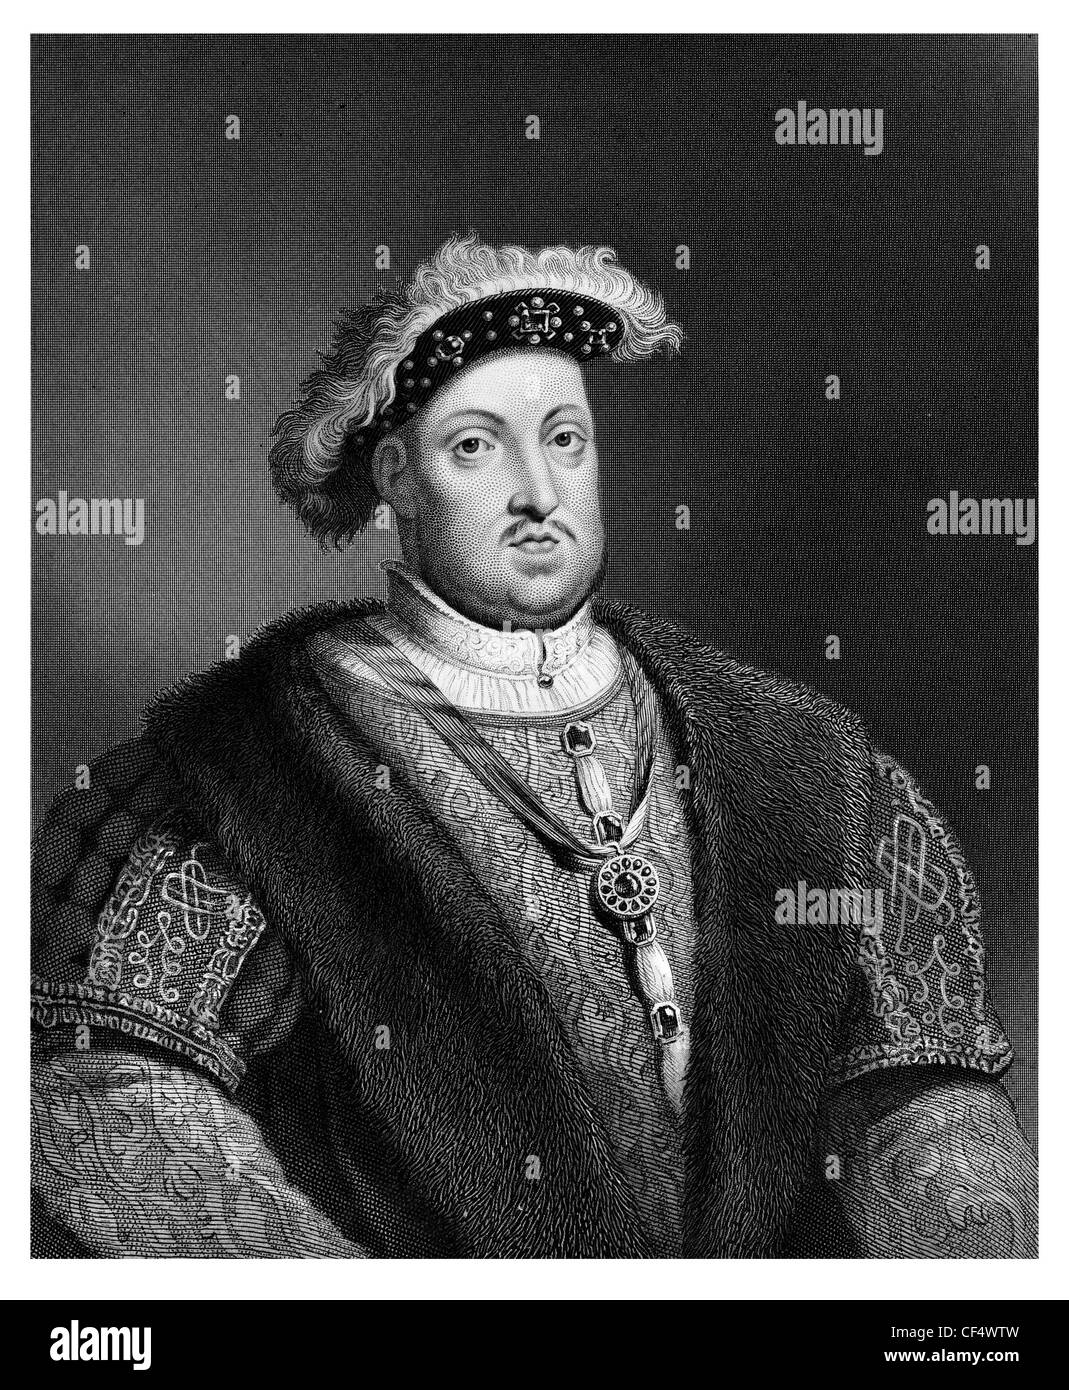 Enrique VIII, rey de Inglaterra Señor monarca de la casa Tudor royal emperador abrigo Foto de stock